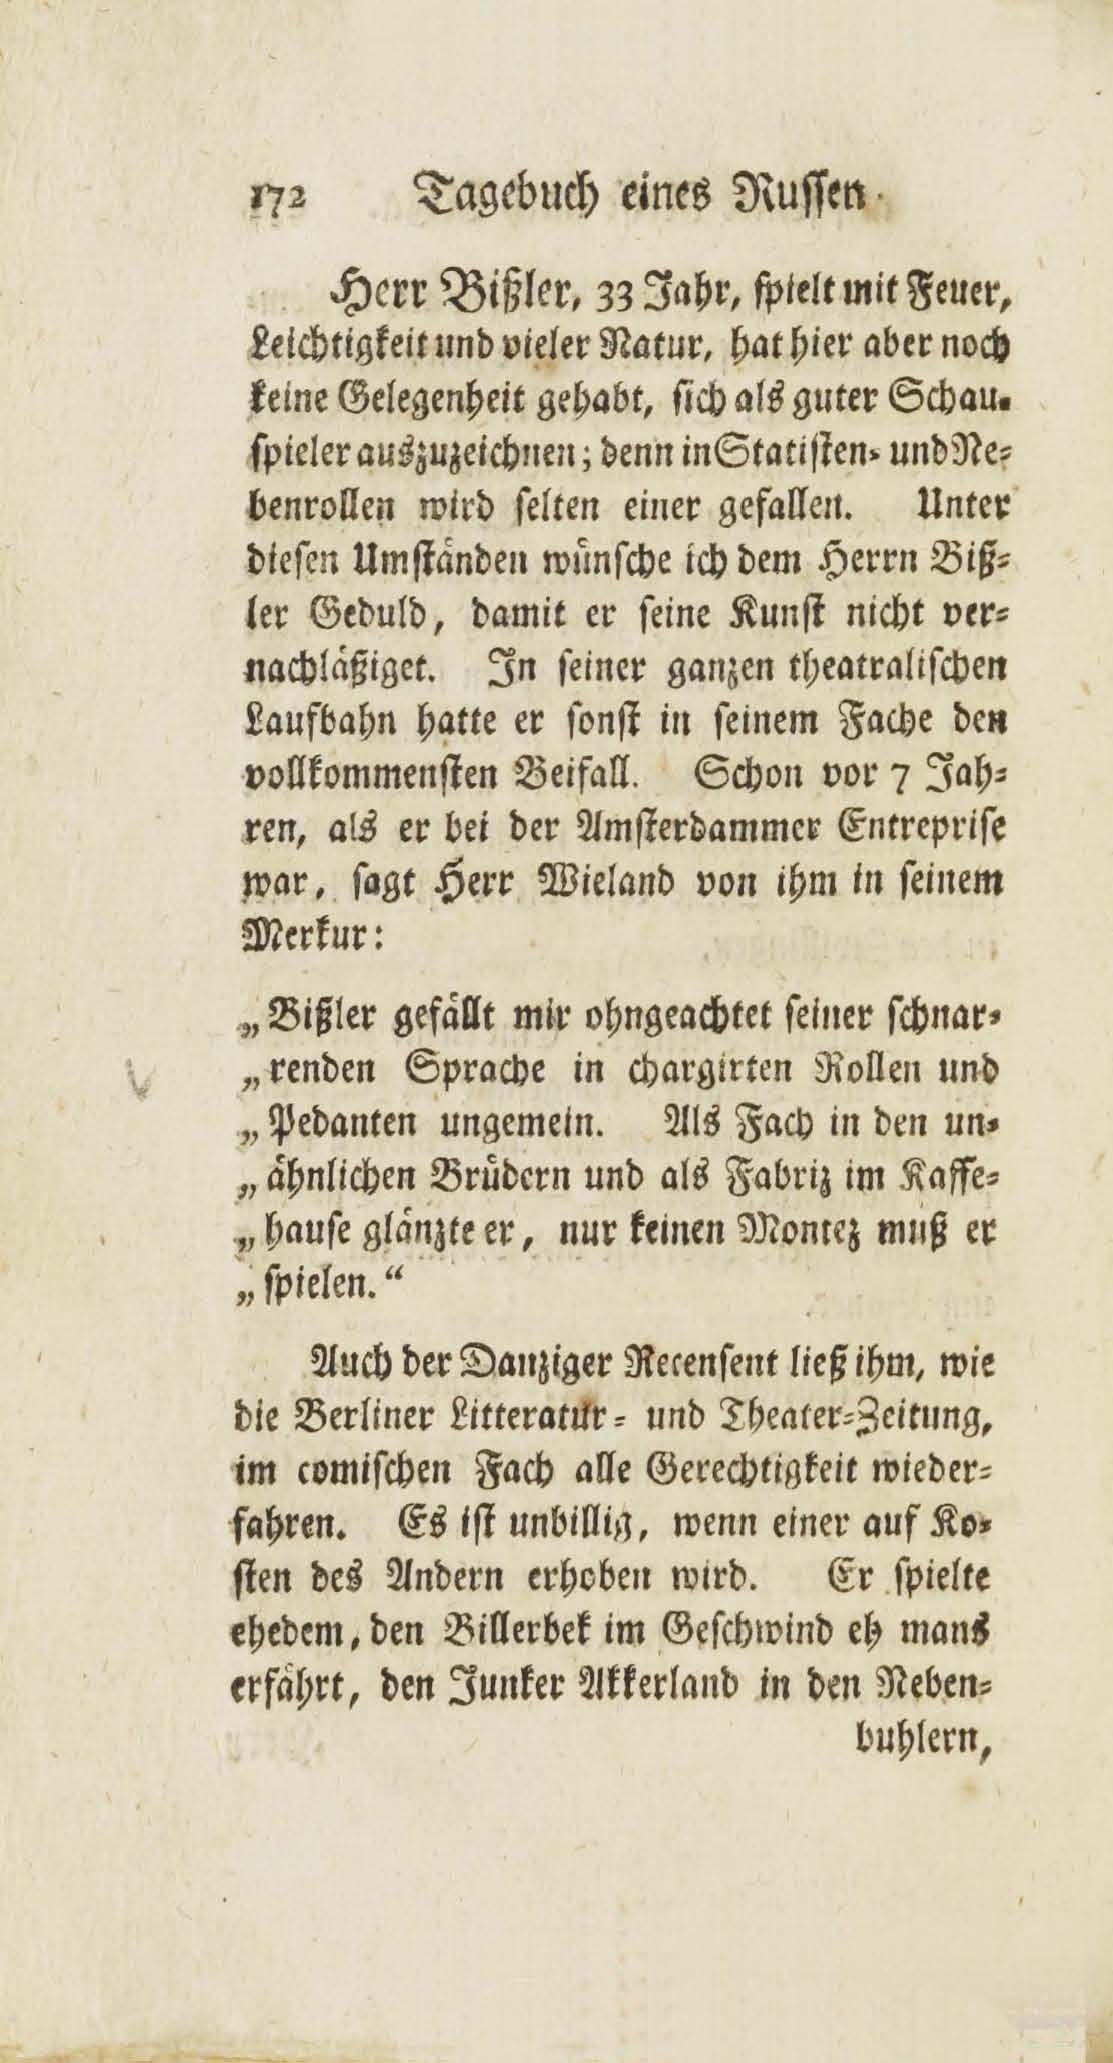 Auszug aus dem Tagebuch eines Russen auf seiner Reise nach Riga (1783) | 171. Main body of text